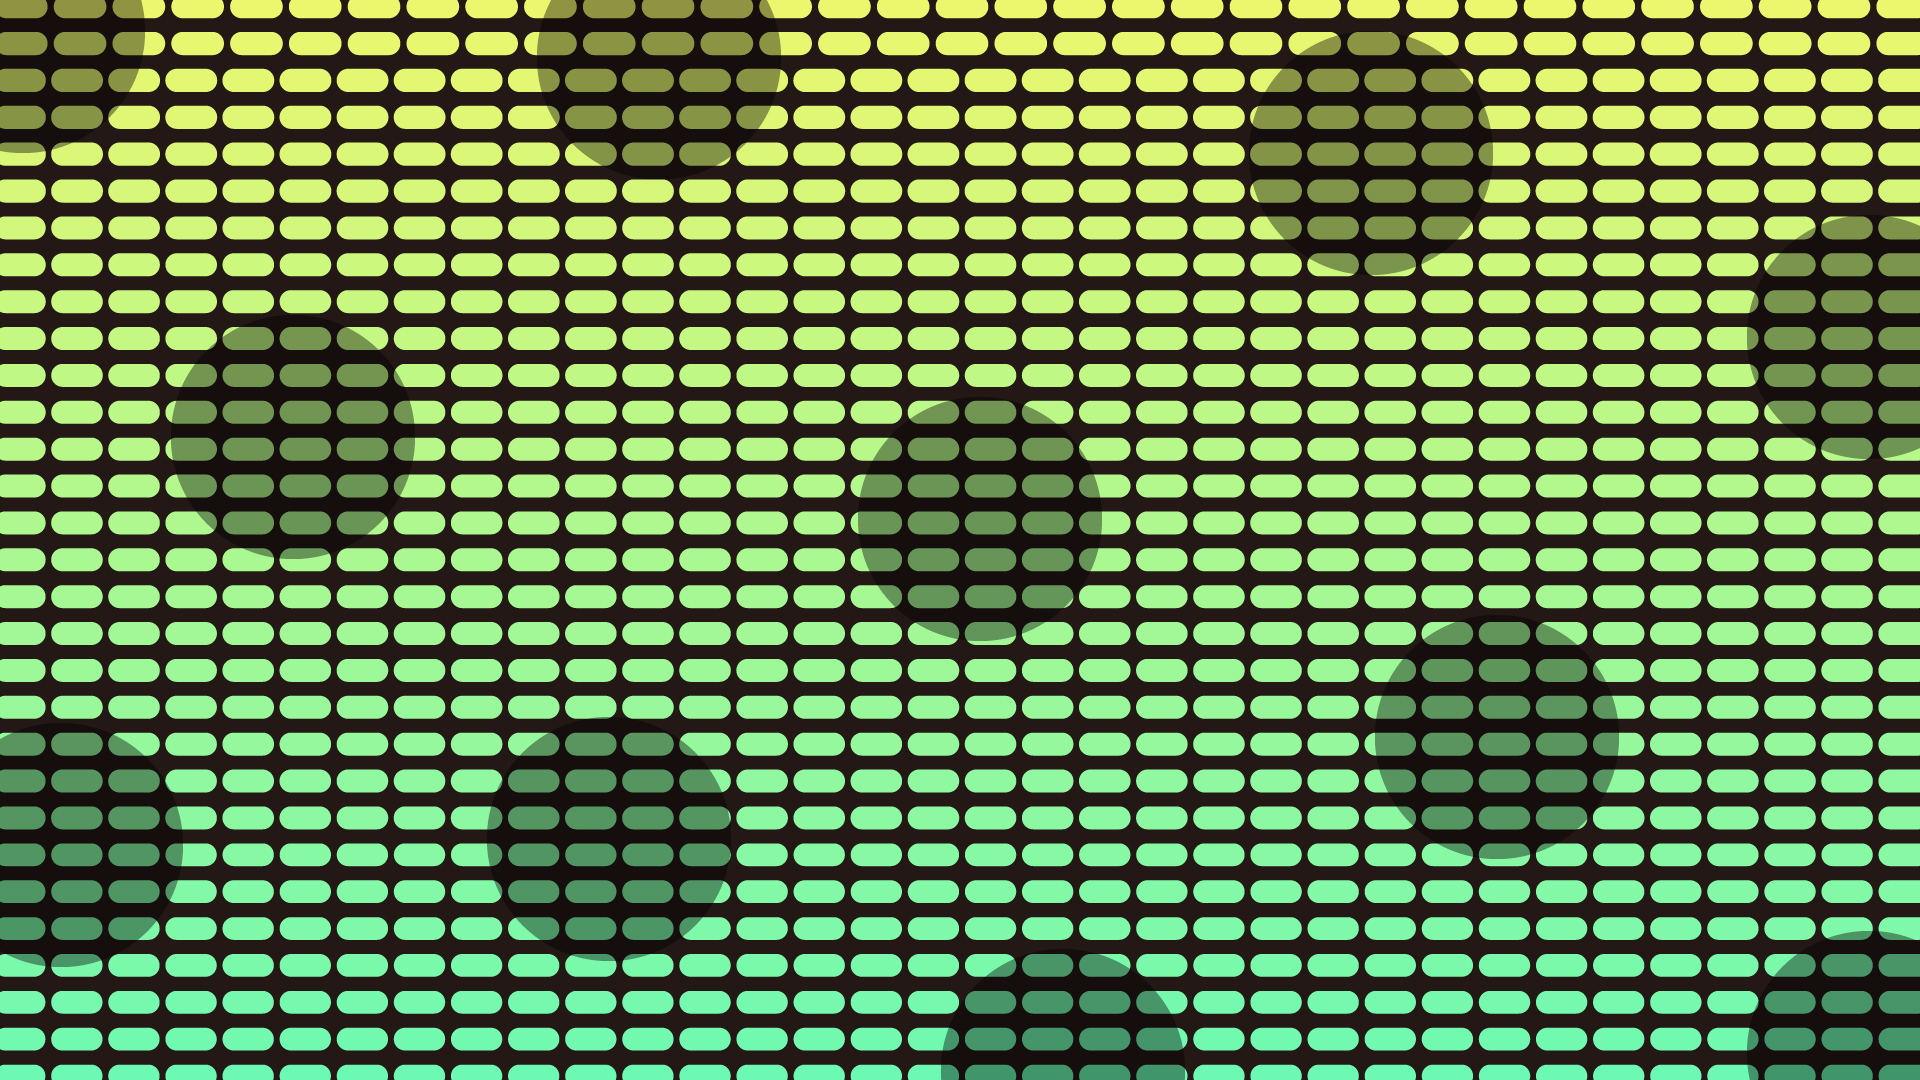 長方形ドットの壁紙・背景素材 1,920px×1,080px